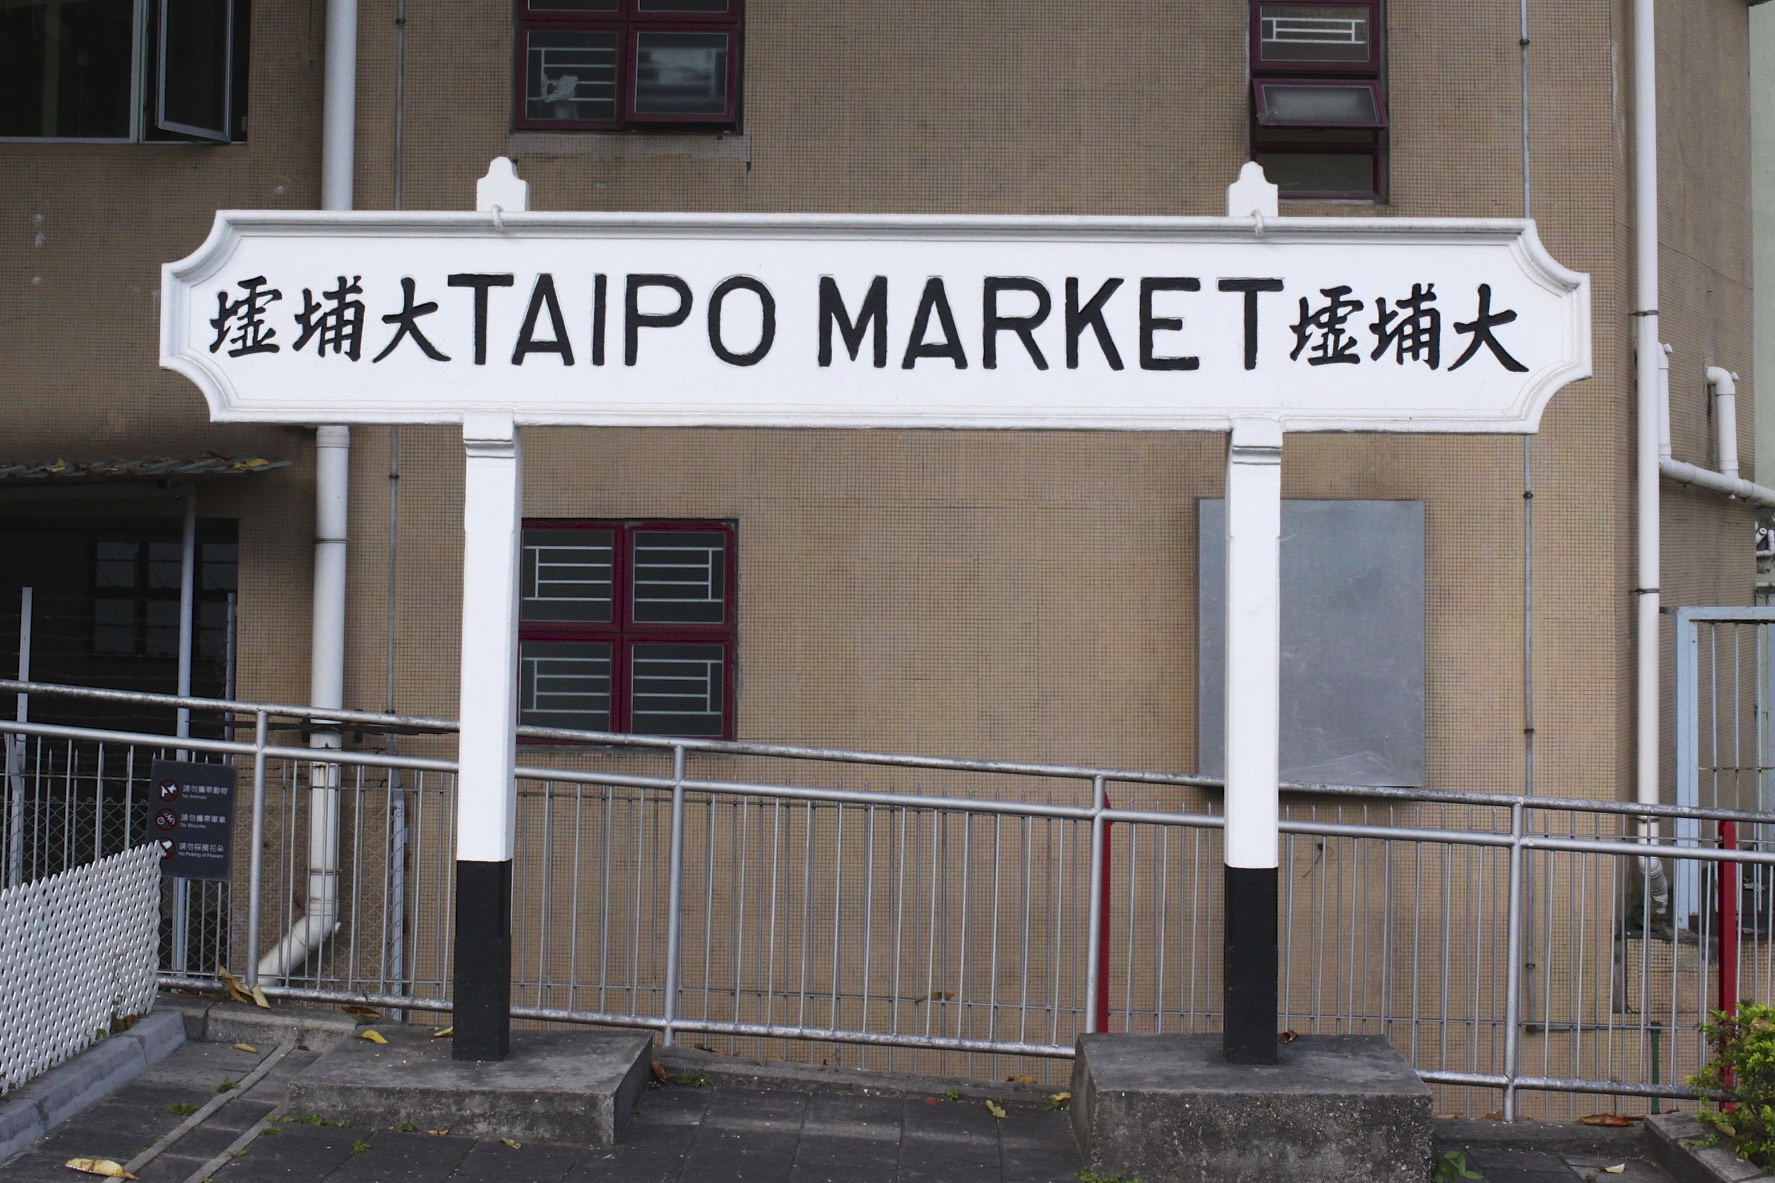 Tai Po Market